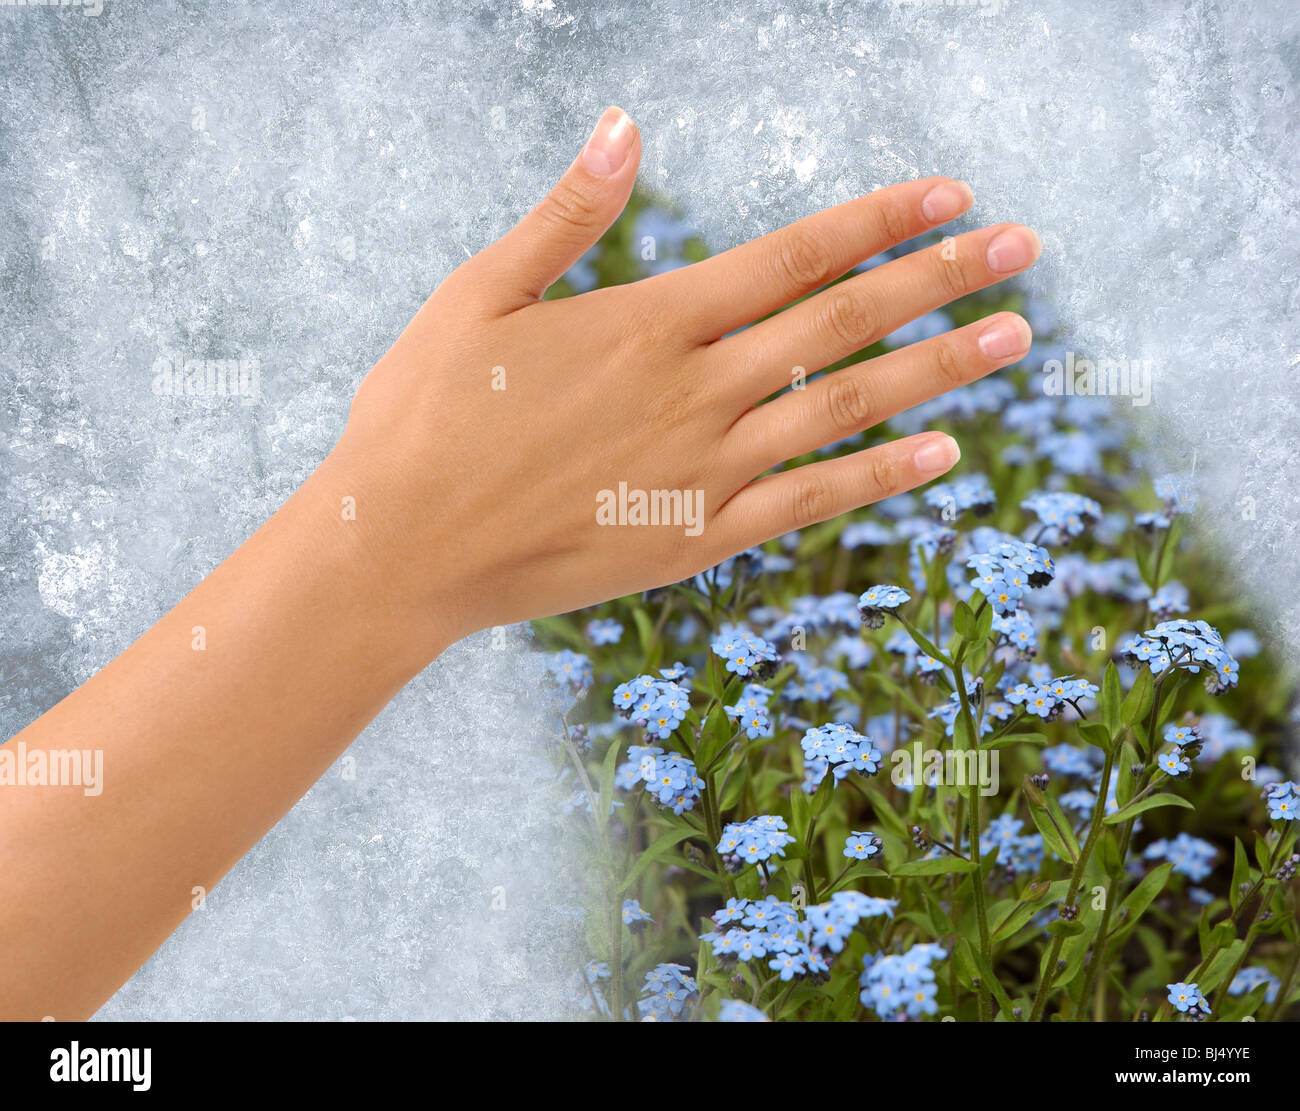 Enteisung von einem gefrorenen Fenster enthüllt Blumenwiese hinter Hand Stockfoto